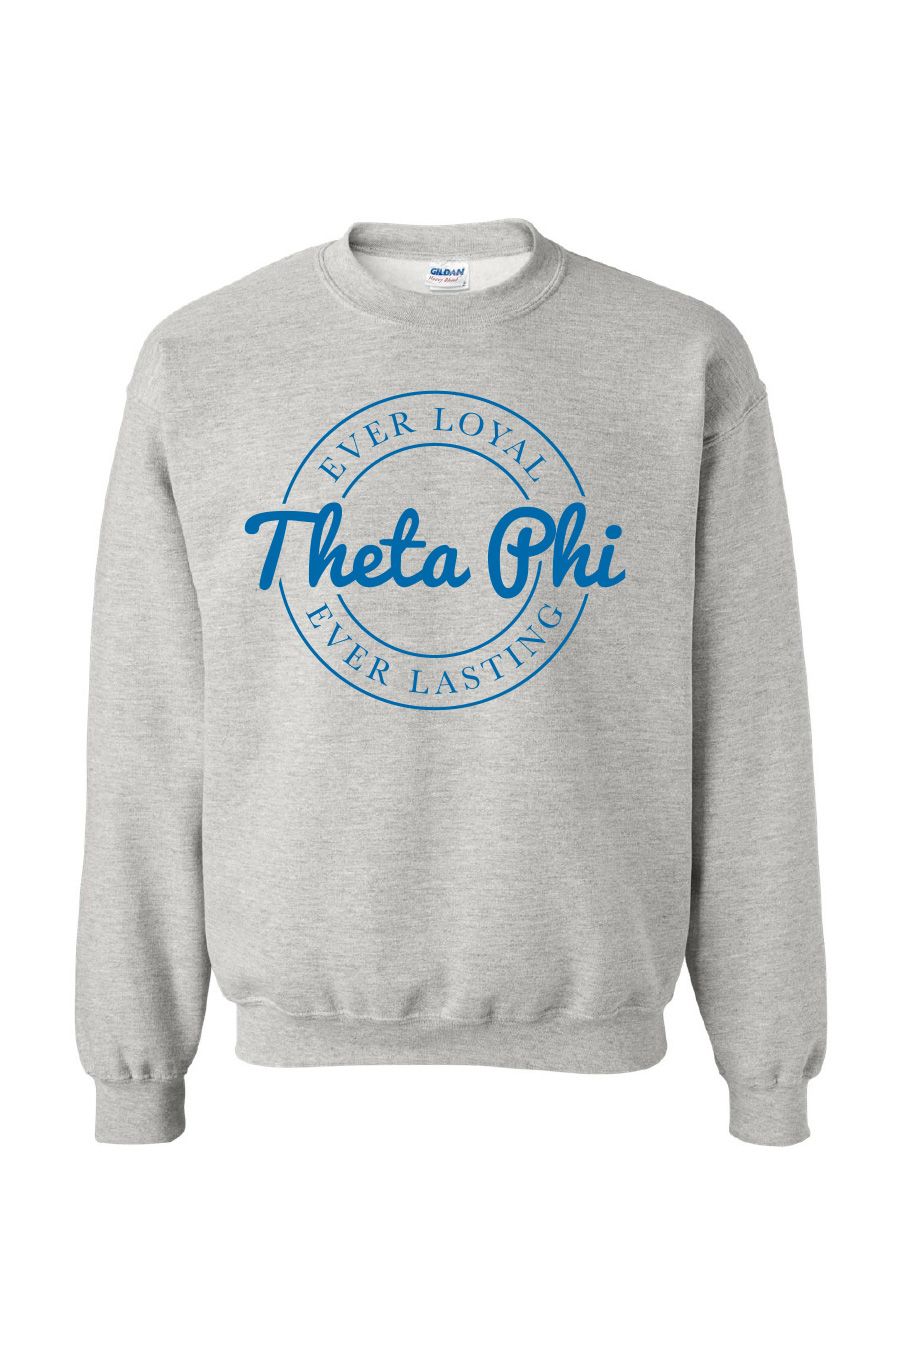 Theta Phi ELEL Stamp Sweatshirt